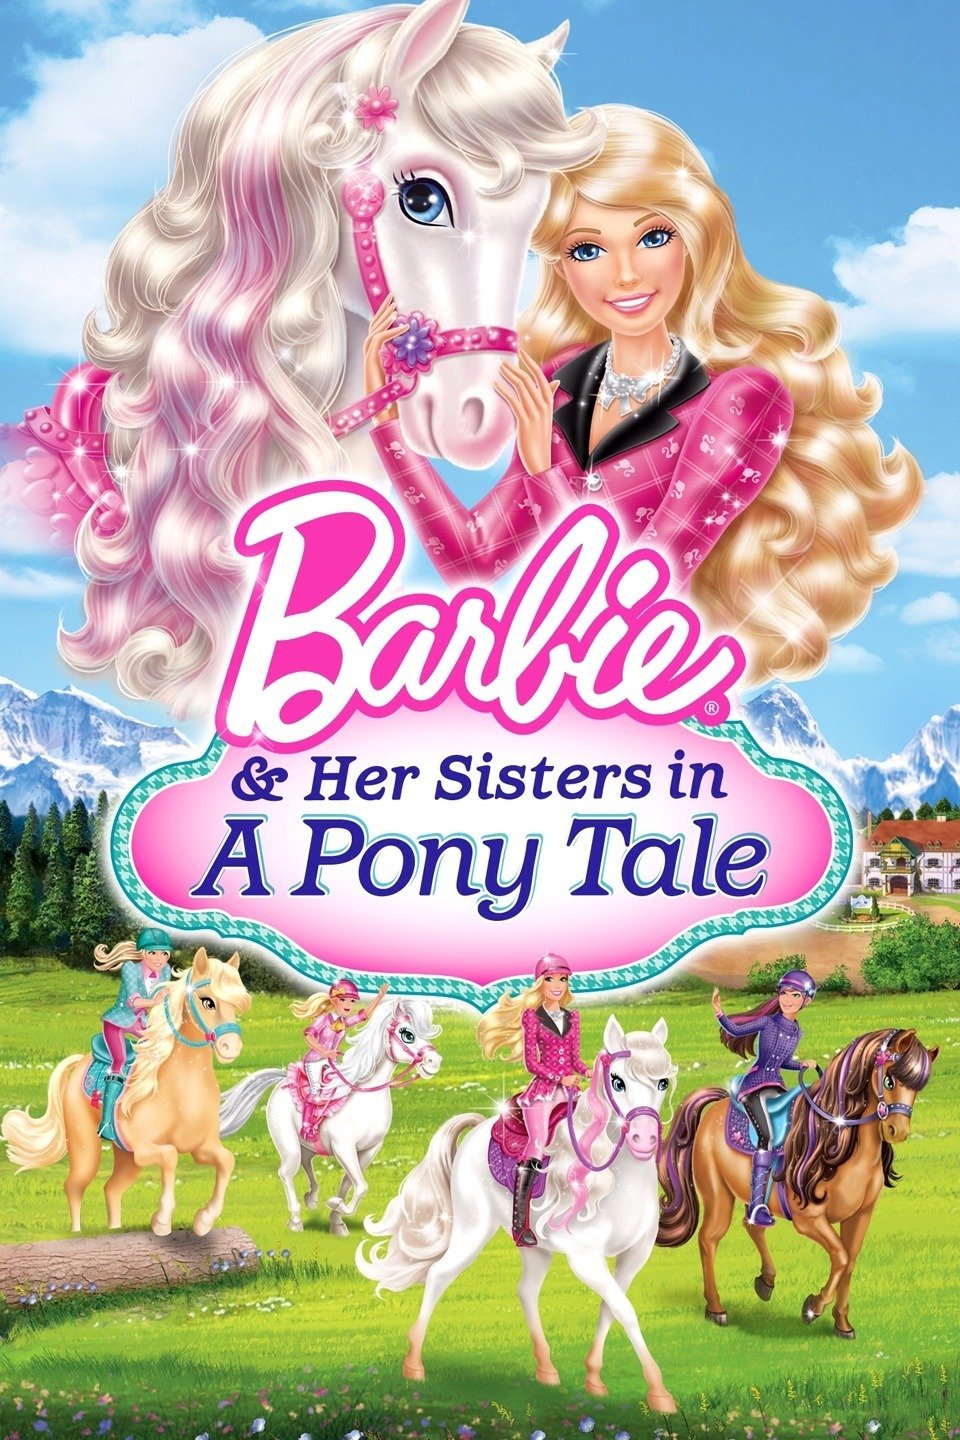 download film barbie sub indo